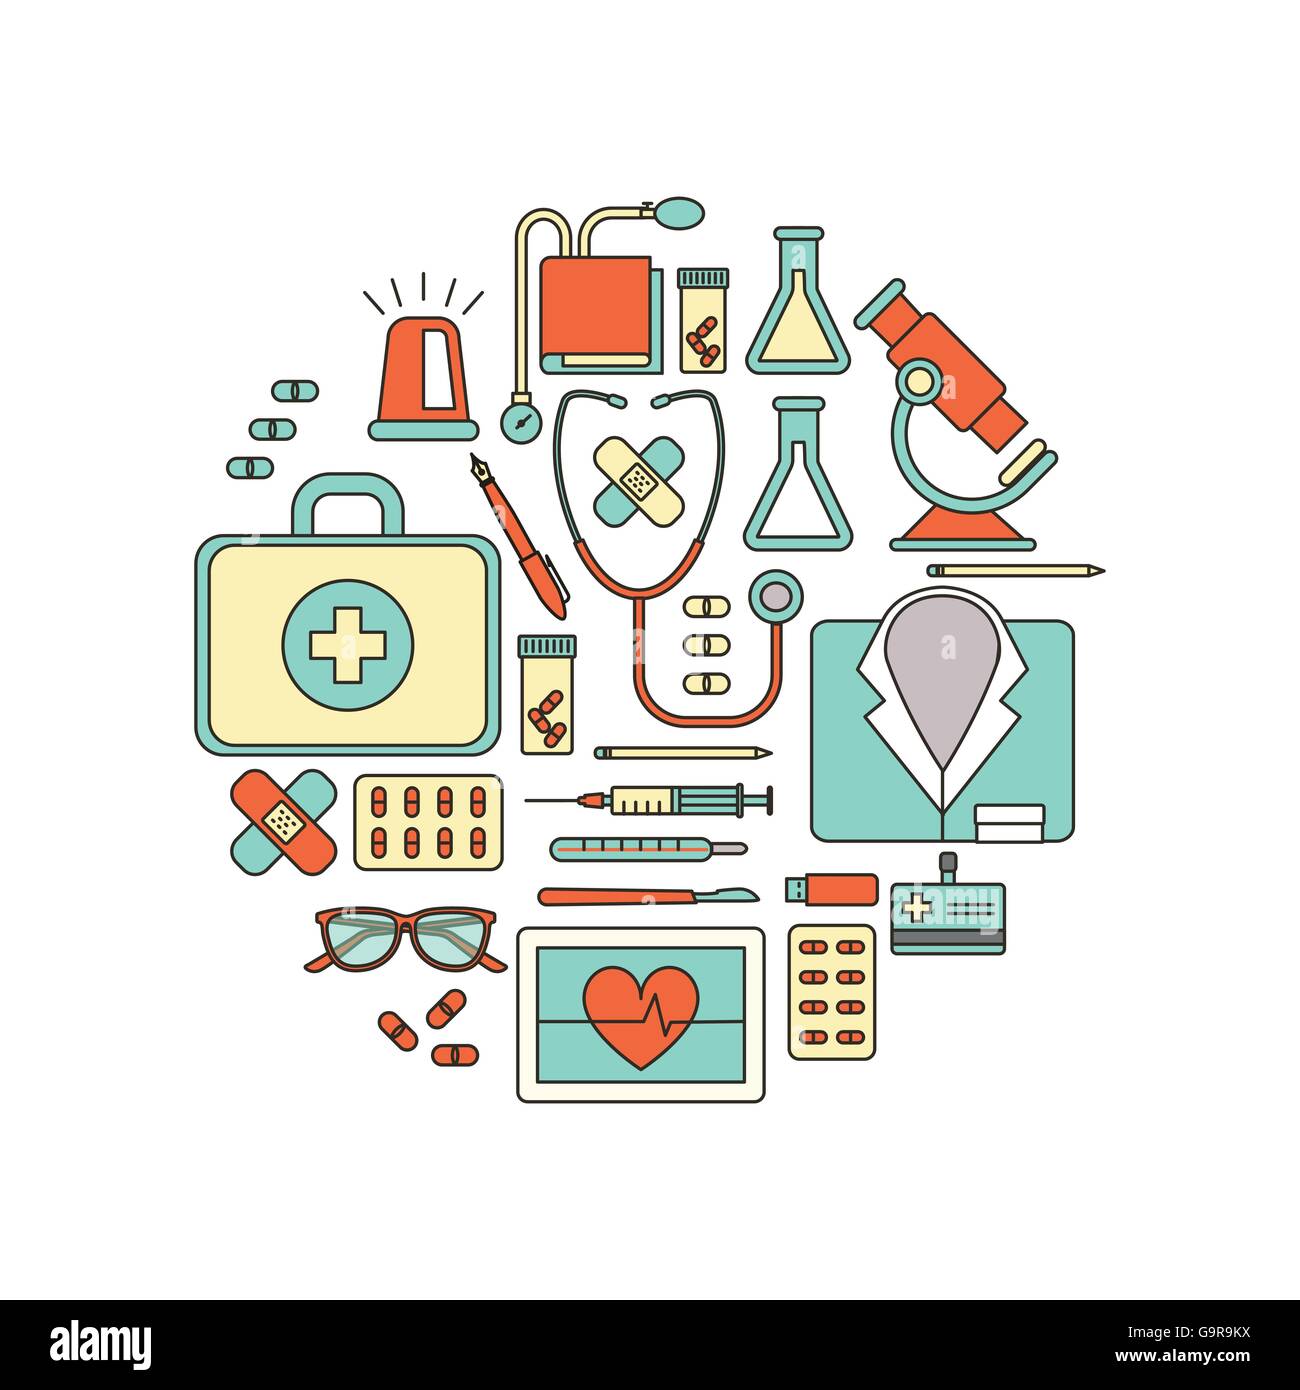 Medico e sanitario di apparecchiature mediche, sottile linea di oggetti in una forma circolare su sfondo bianco Illustrazione Vettoriale